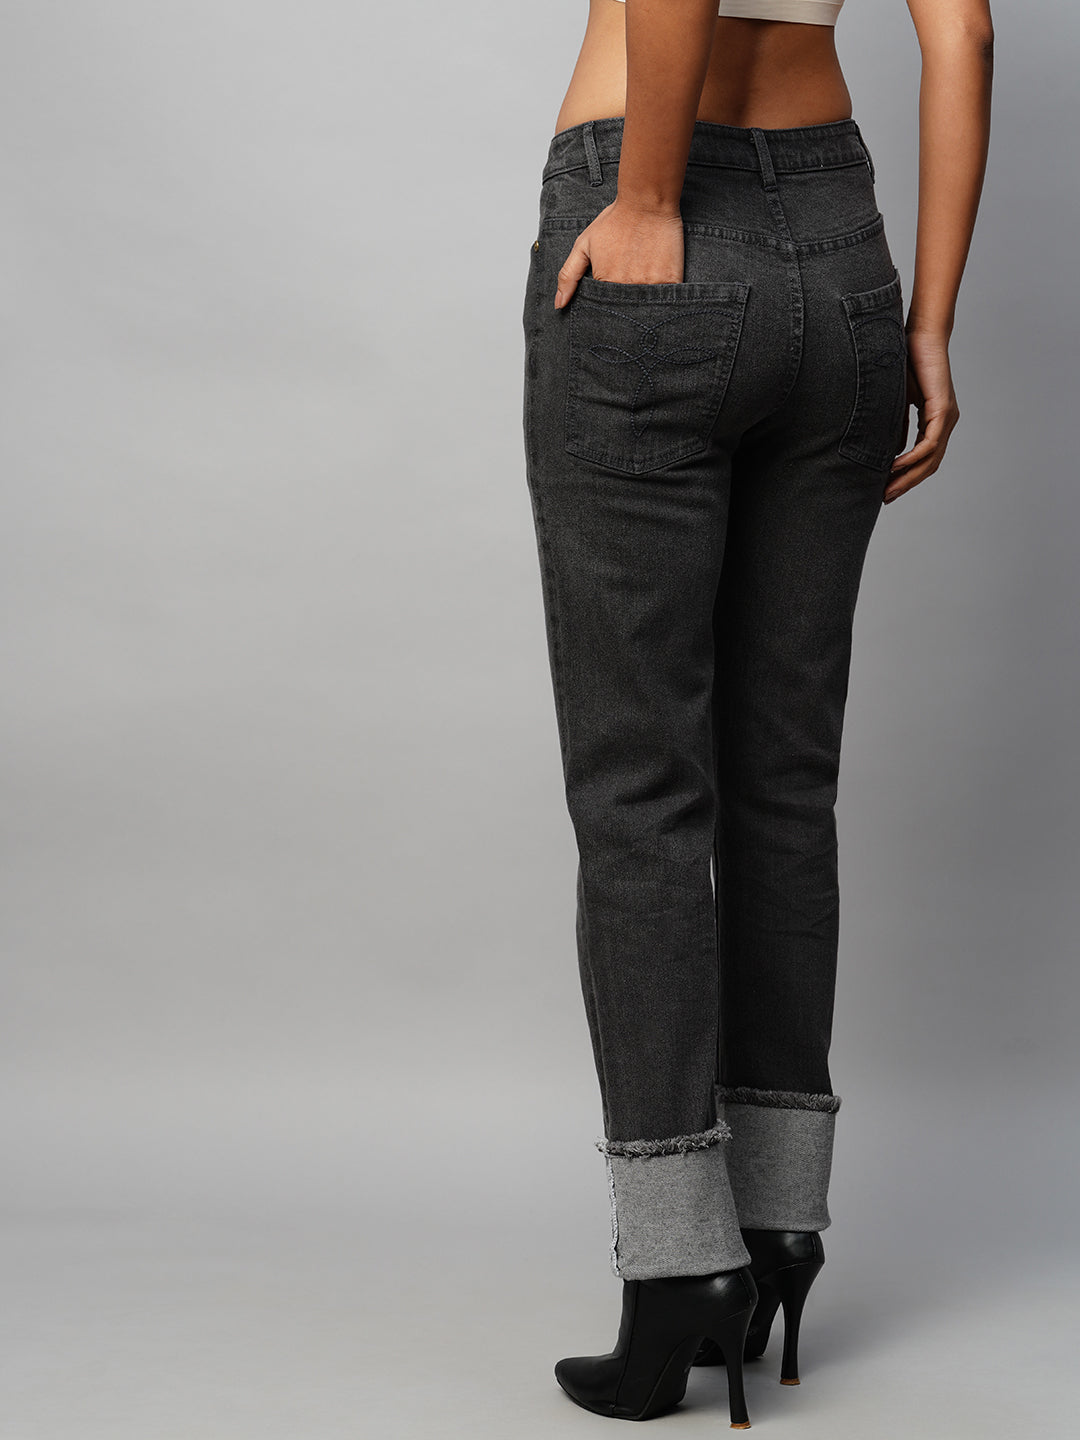 Black Denim Mid Rise Straight Leg Jeans W/ Turn Up Cuffs